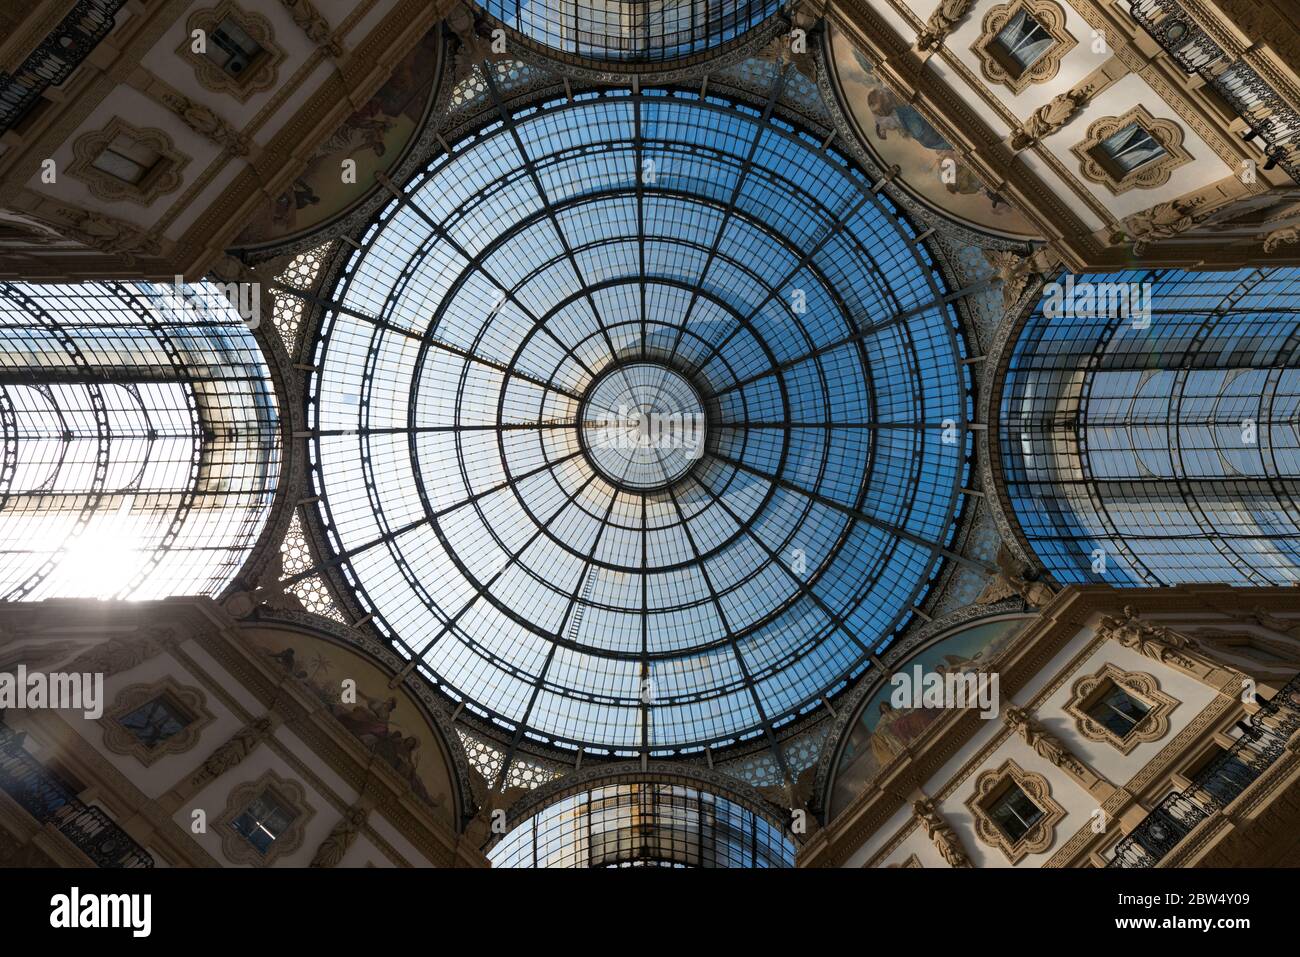 MILÁN, ITALIA - 16, MARZO, 2018: Imagen angular del techo arquitectónico de la Galleria Vittorio Emanuele II, un antiguo centro comercial en Milán, Italia Foto de stock